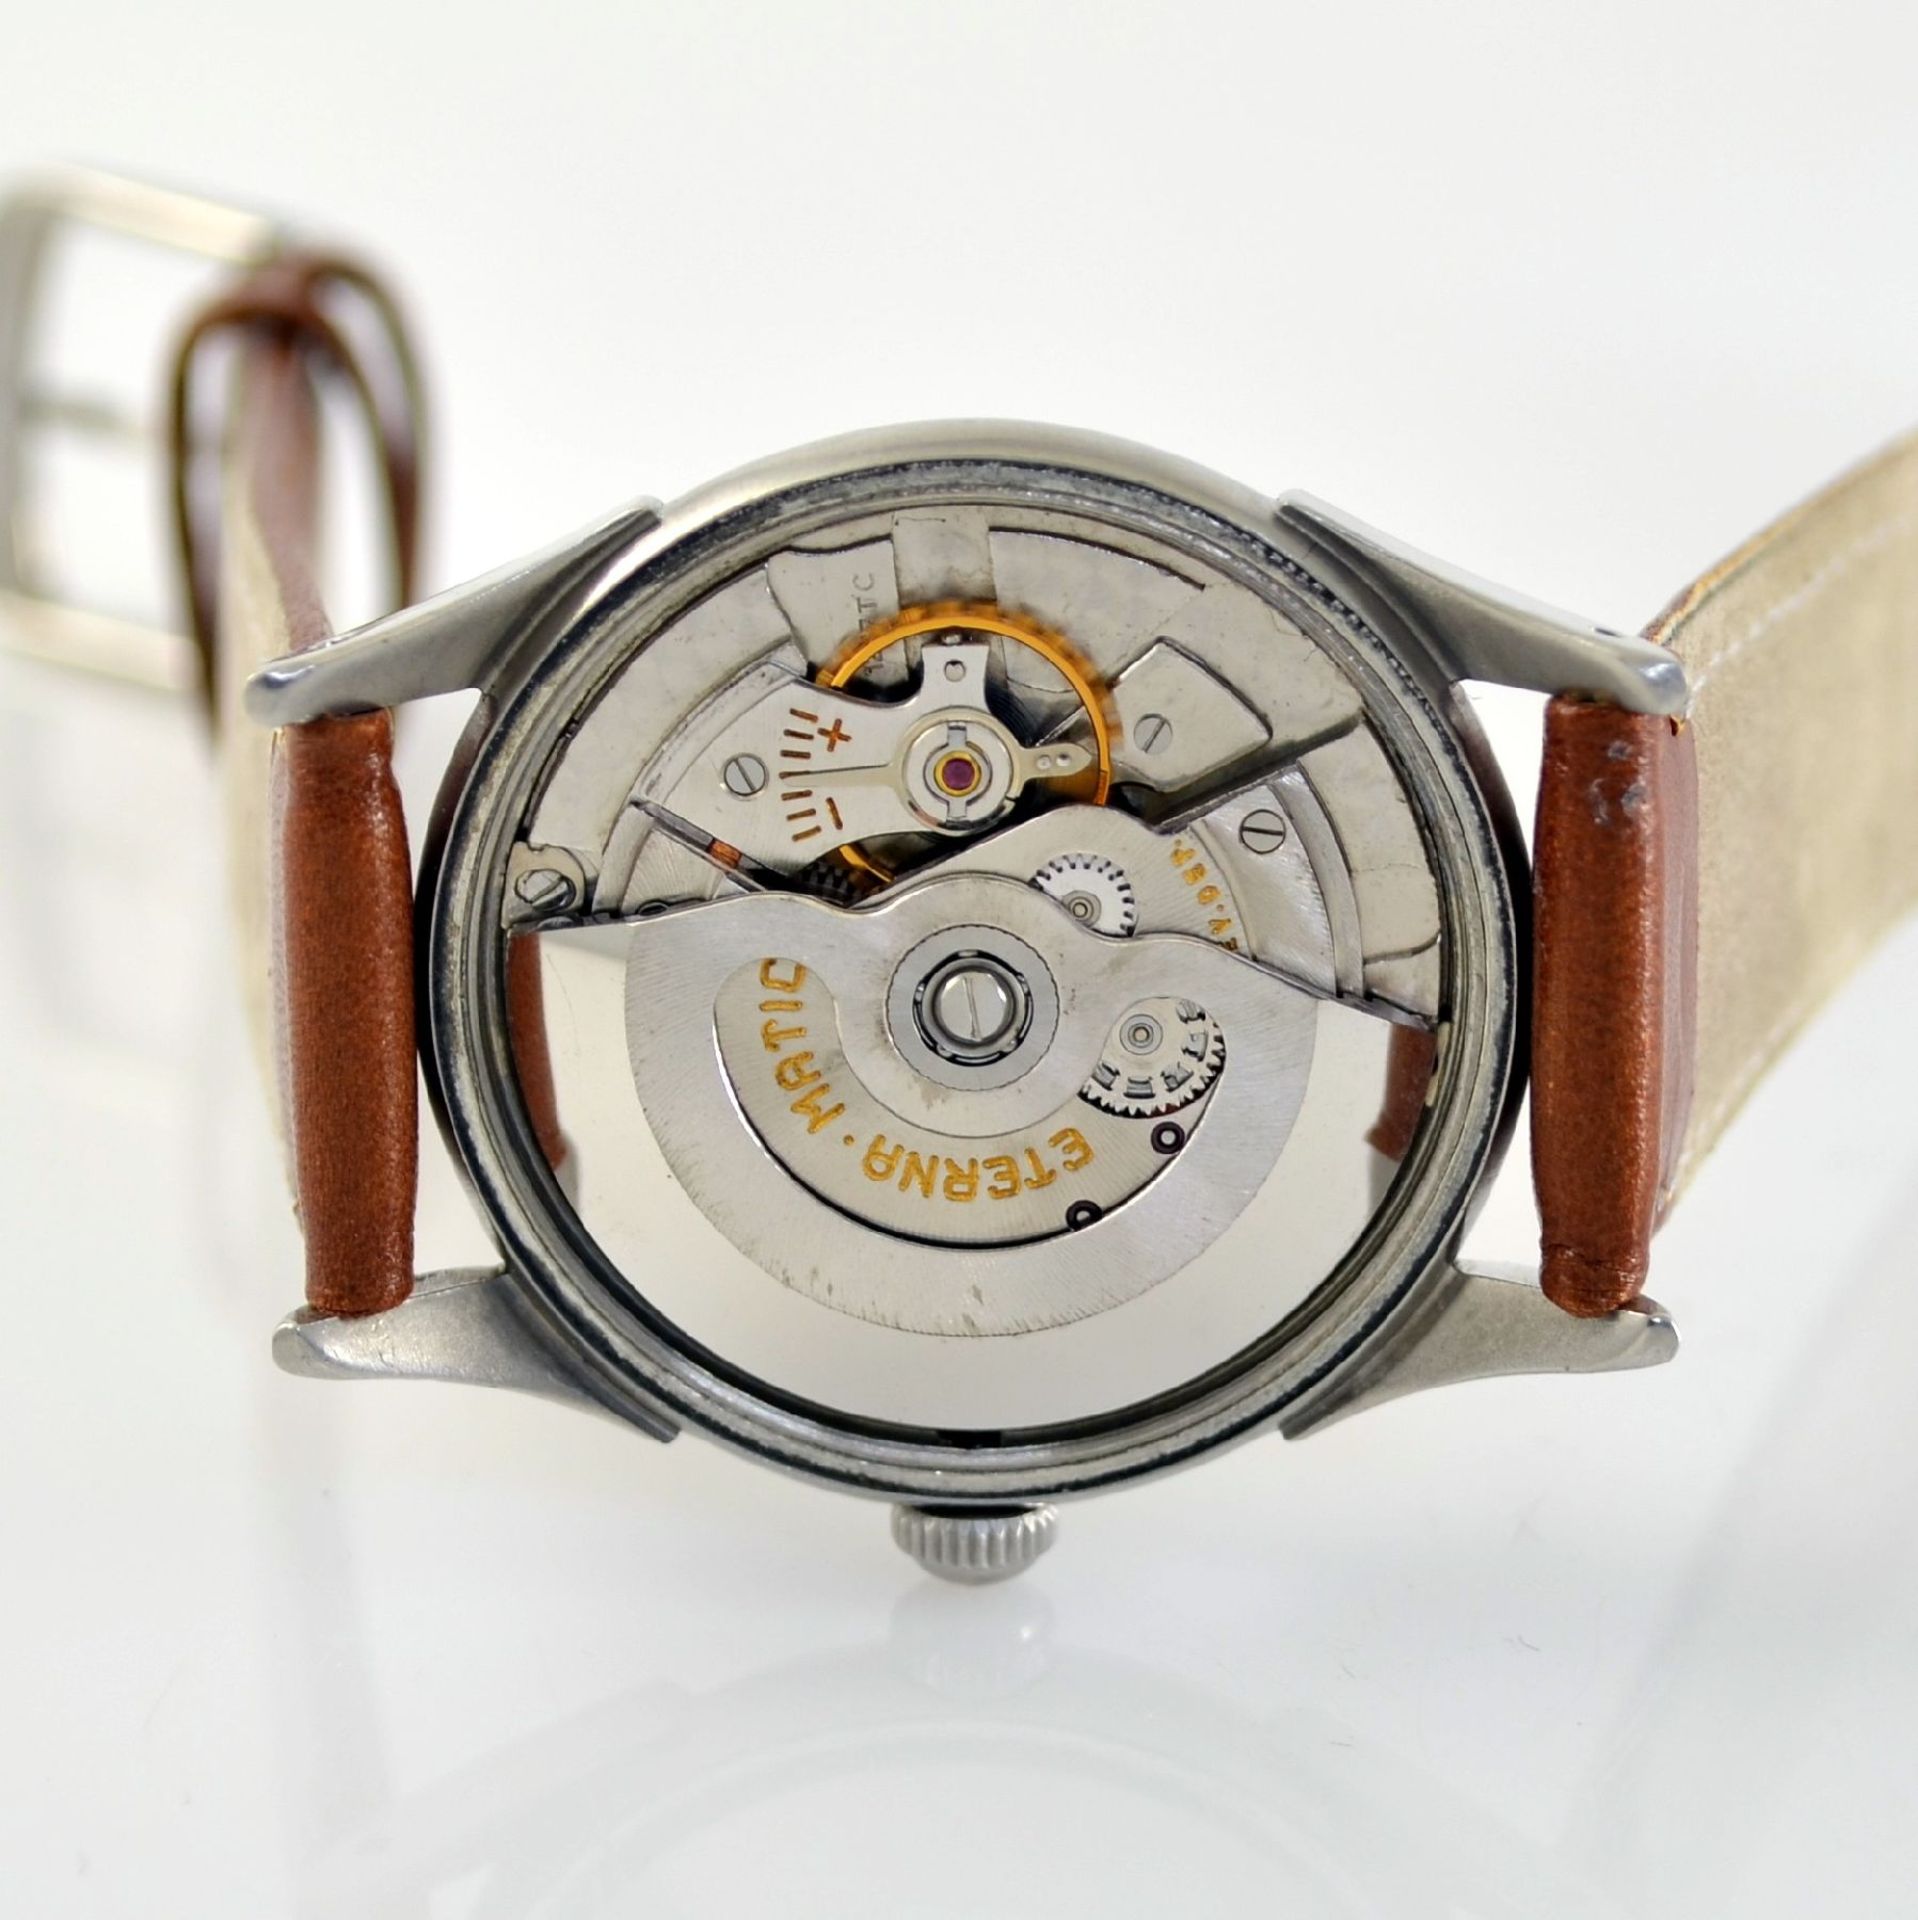 ETERNA-MATIC 2 wristwatches in steel, Switzerland around 1950, screwed down cases with unusual lugs, - Bild 5 aus 13